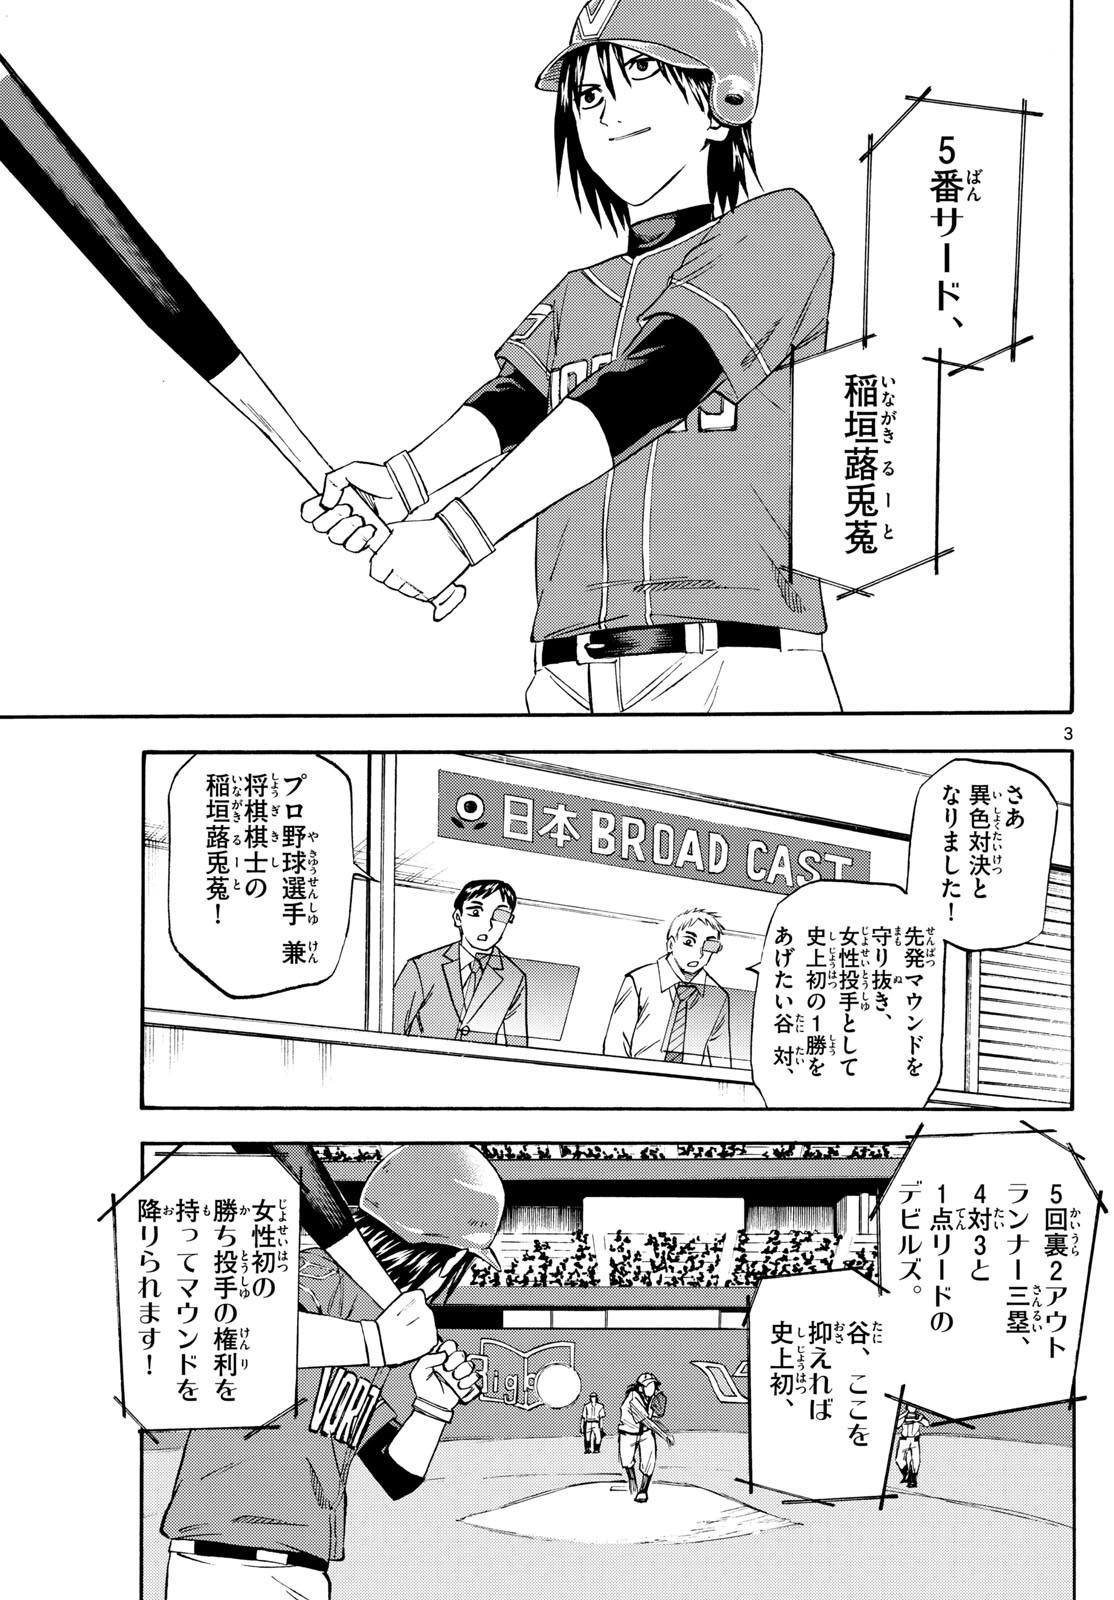 Ryu-to-Ichigo - Chapter 197 - Page 3